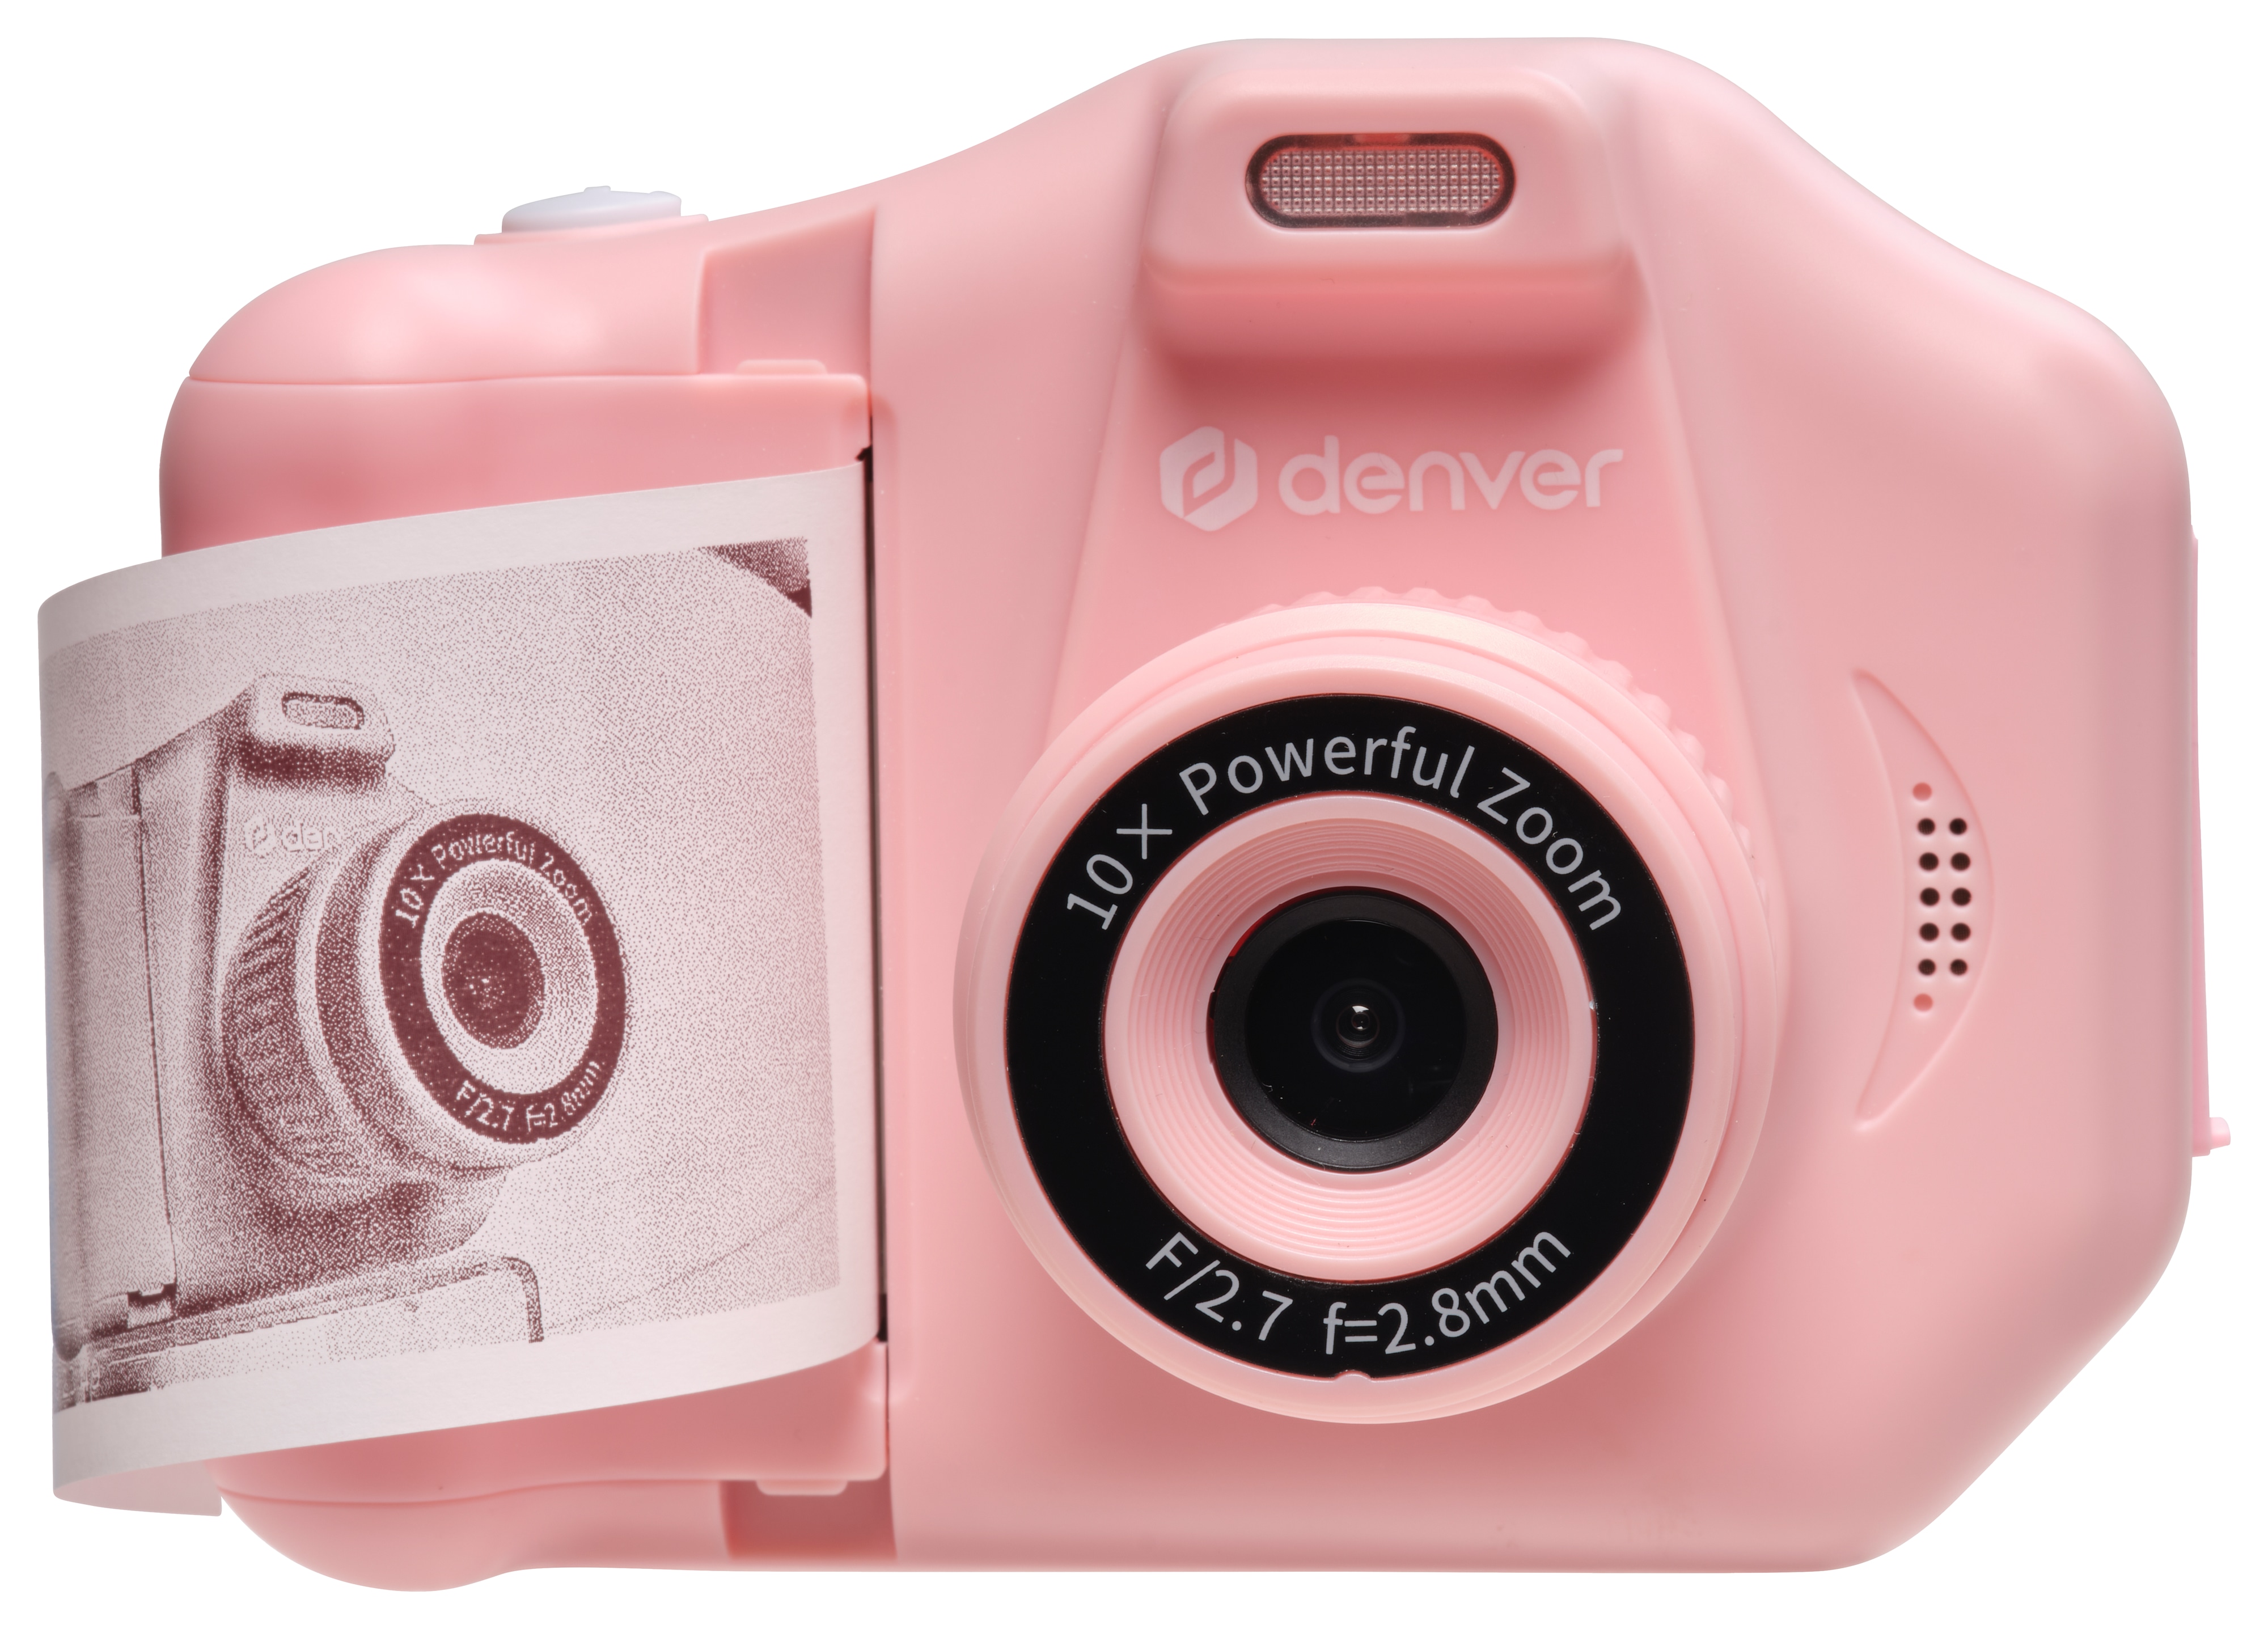 DENVER Kinder-Bildkamera KPC-1370P, inkl. Bilddrucker, pink